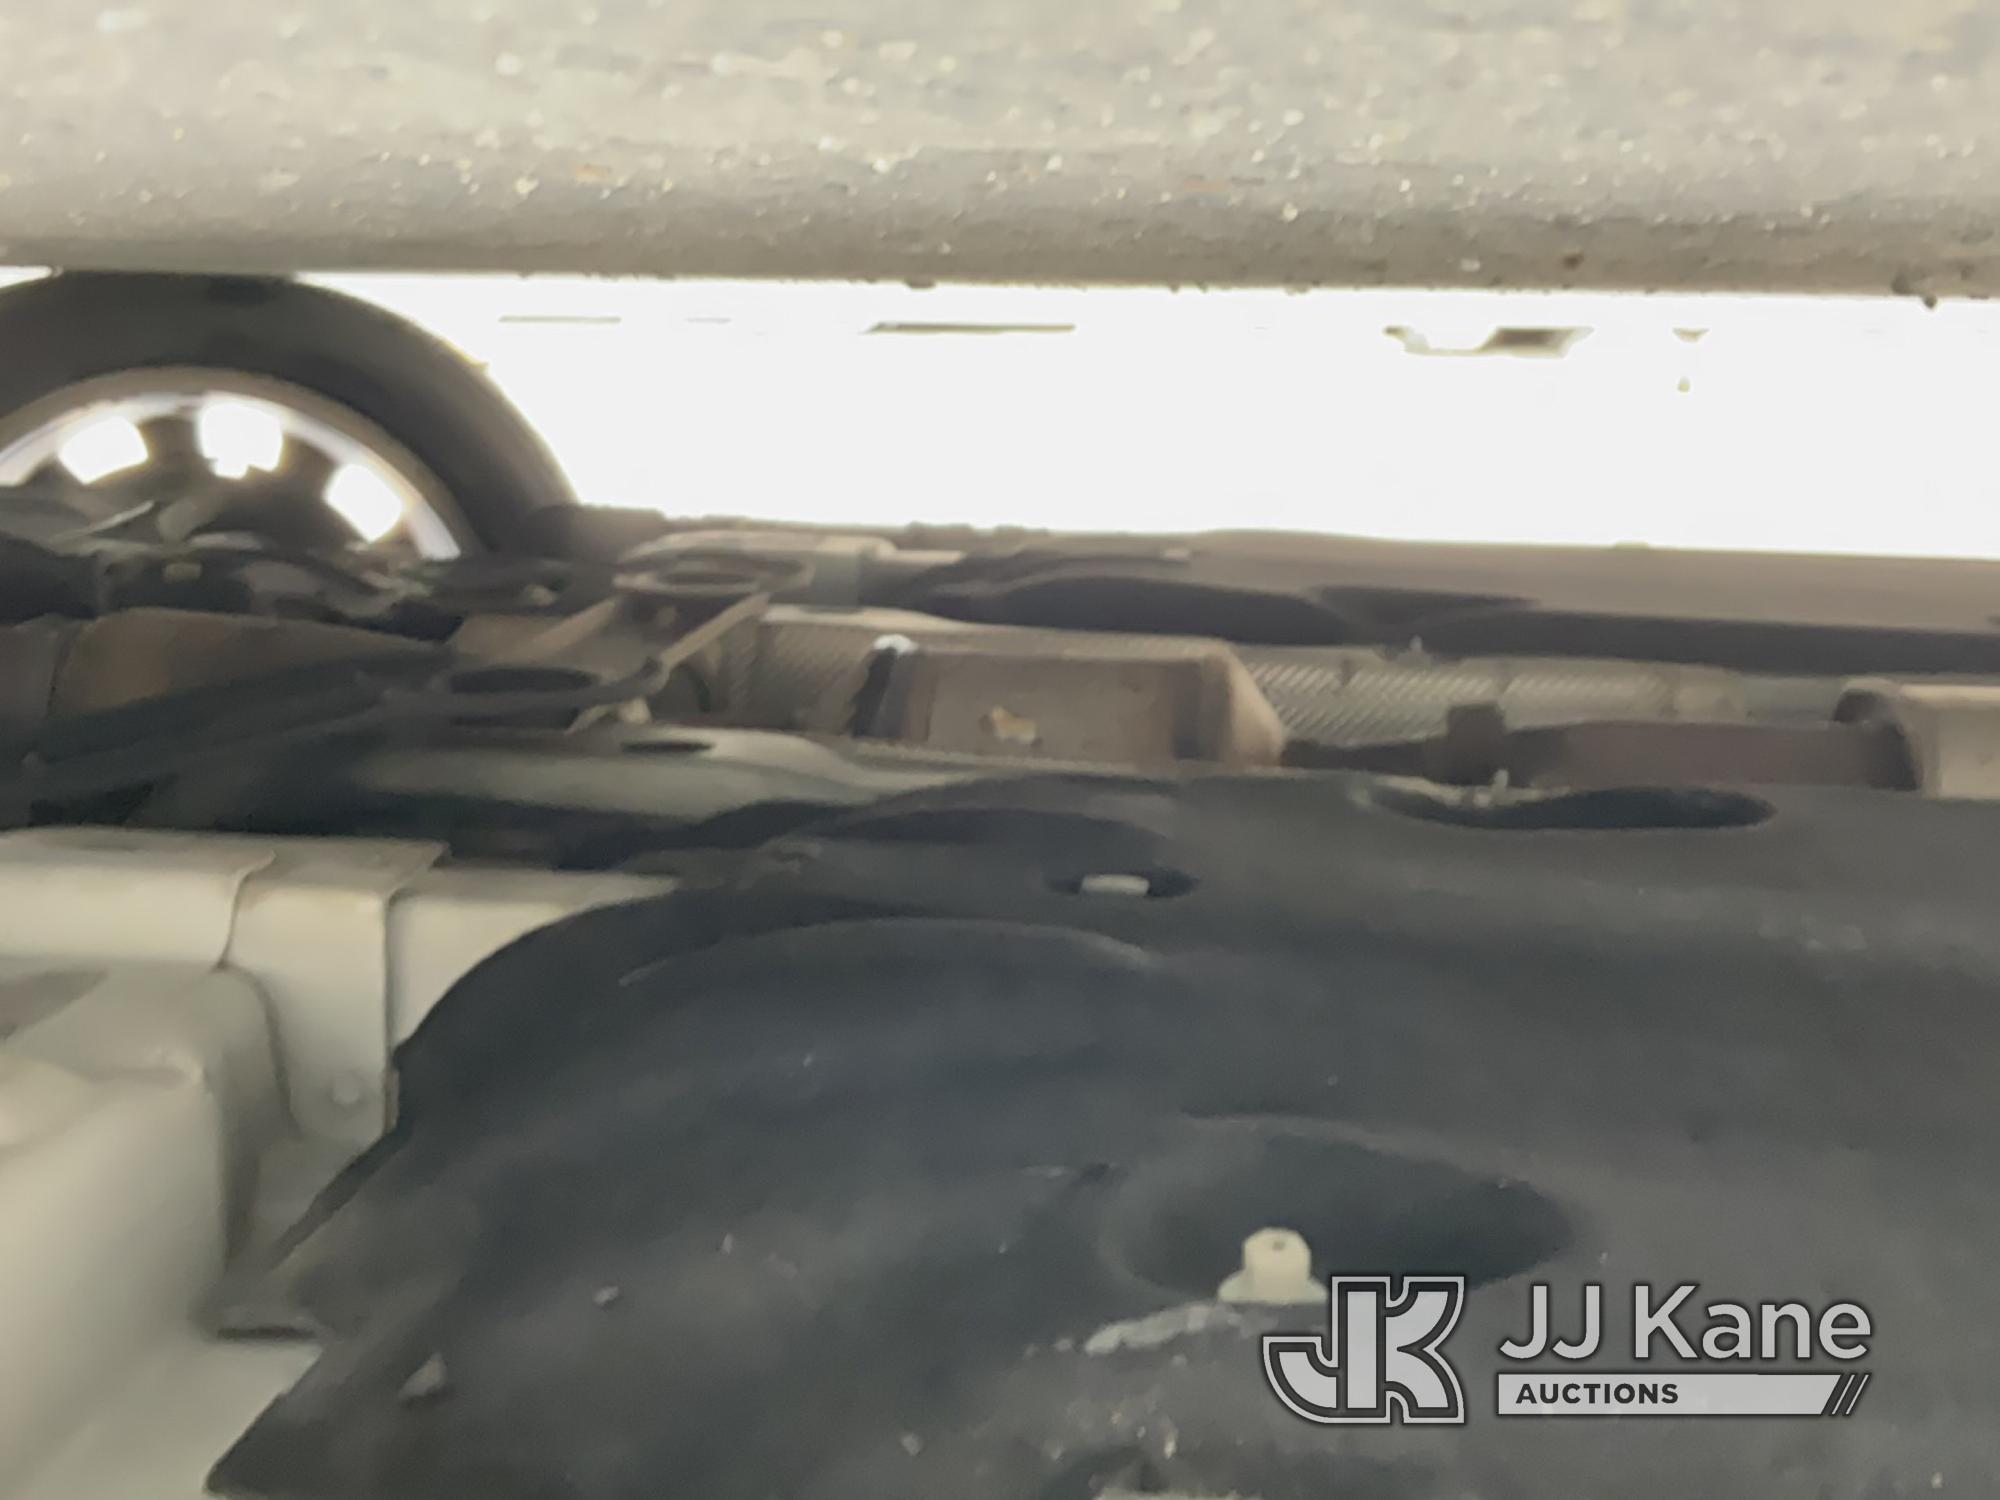 (Jurupa Valley, CA) 2016 Buick LaCrosse 4-Door Sedan Runs & Moves, Not Clearing Drive Cycle